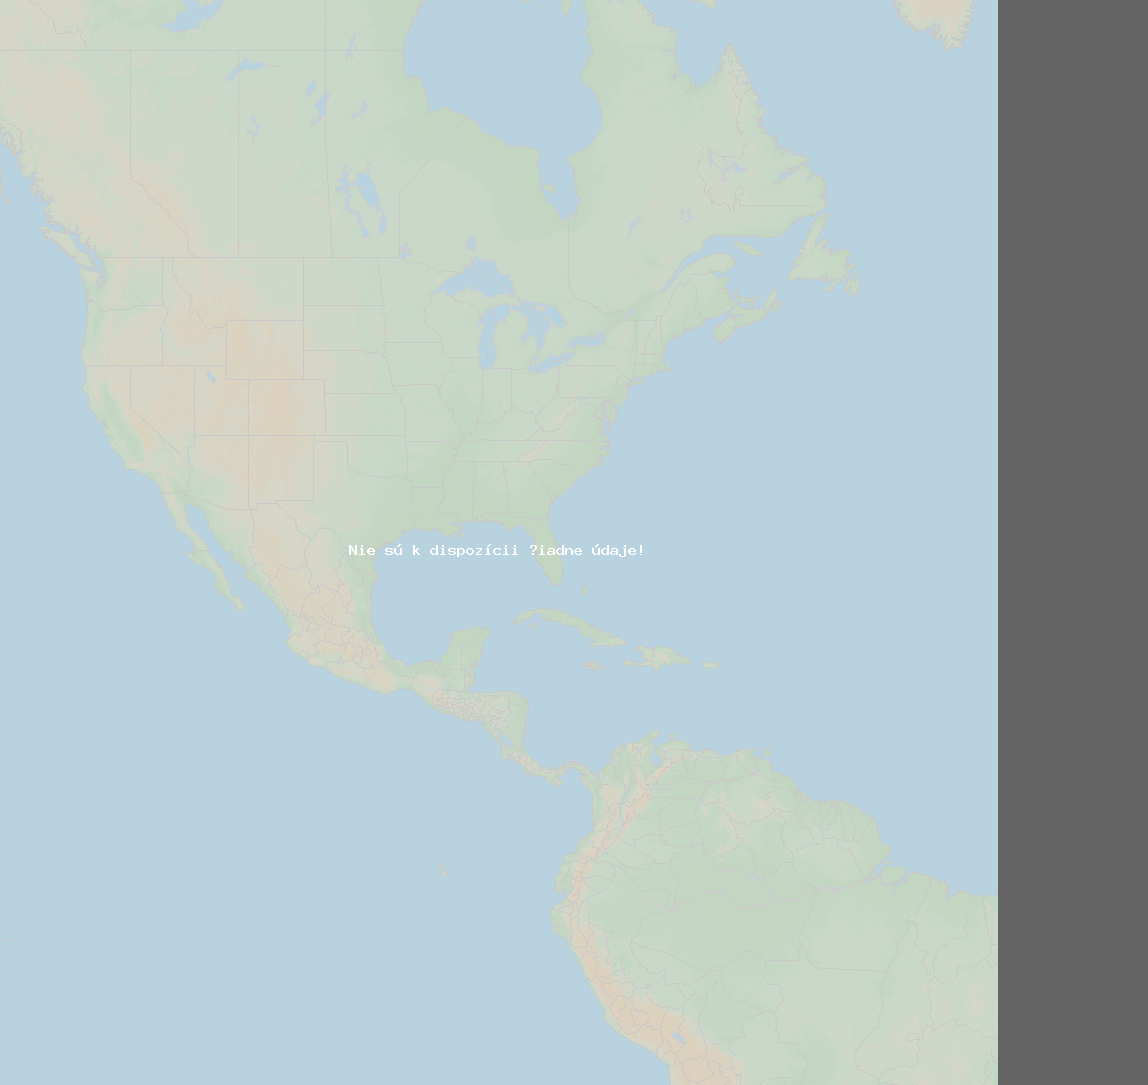 Pomer bleskov (Stanica Lawrence-Dade2) North America 2019 Február